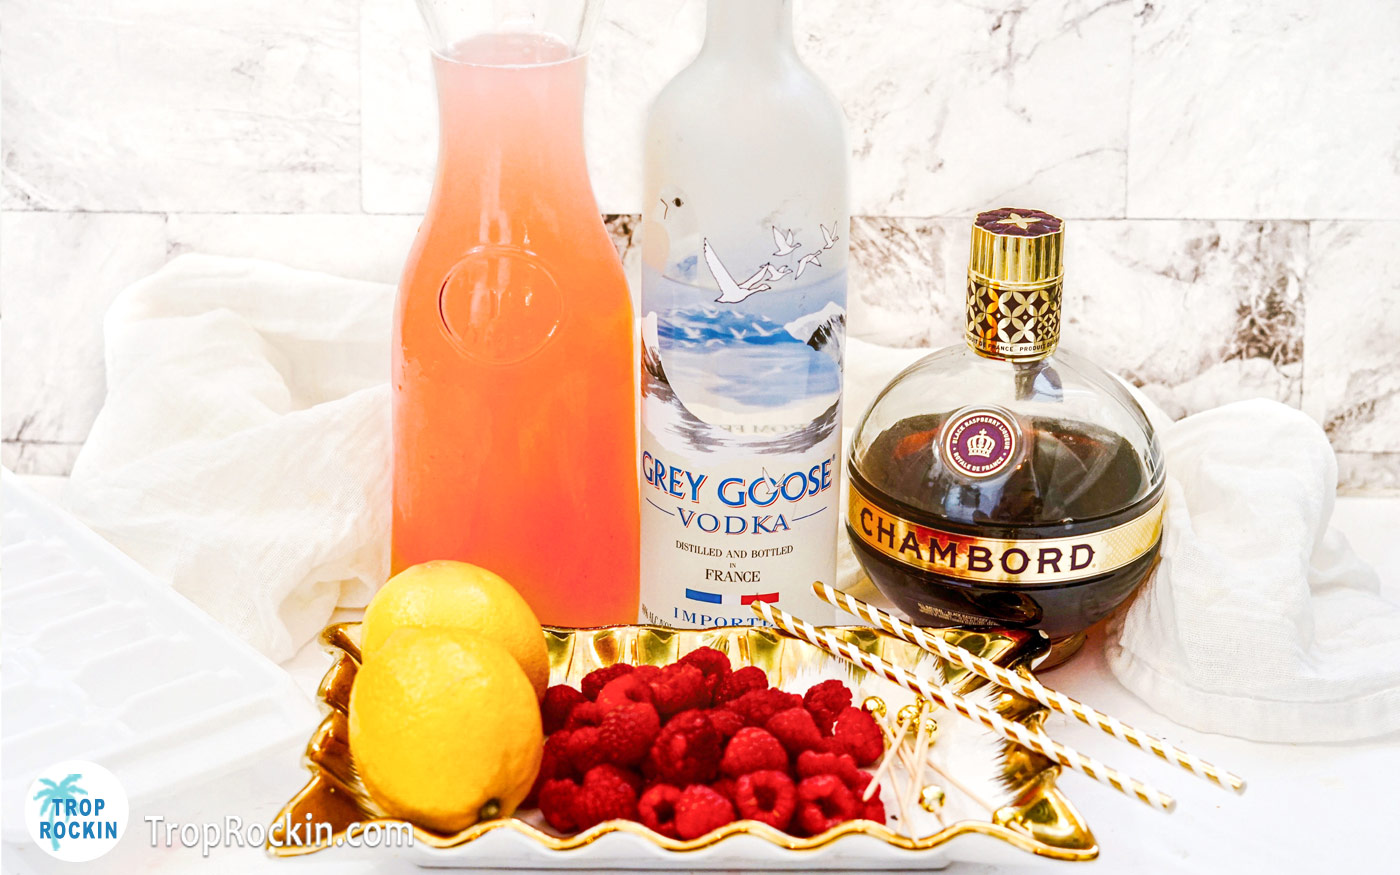 Vodka Raspberry Lemonade ingredients displayed on counter top.